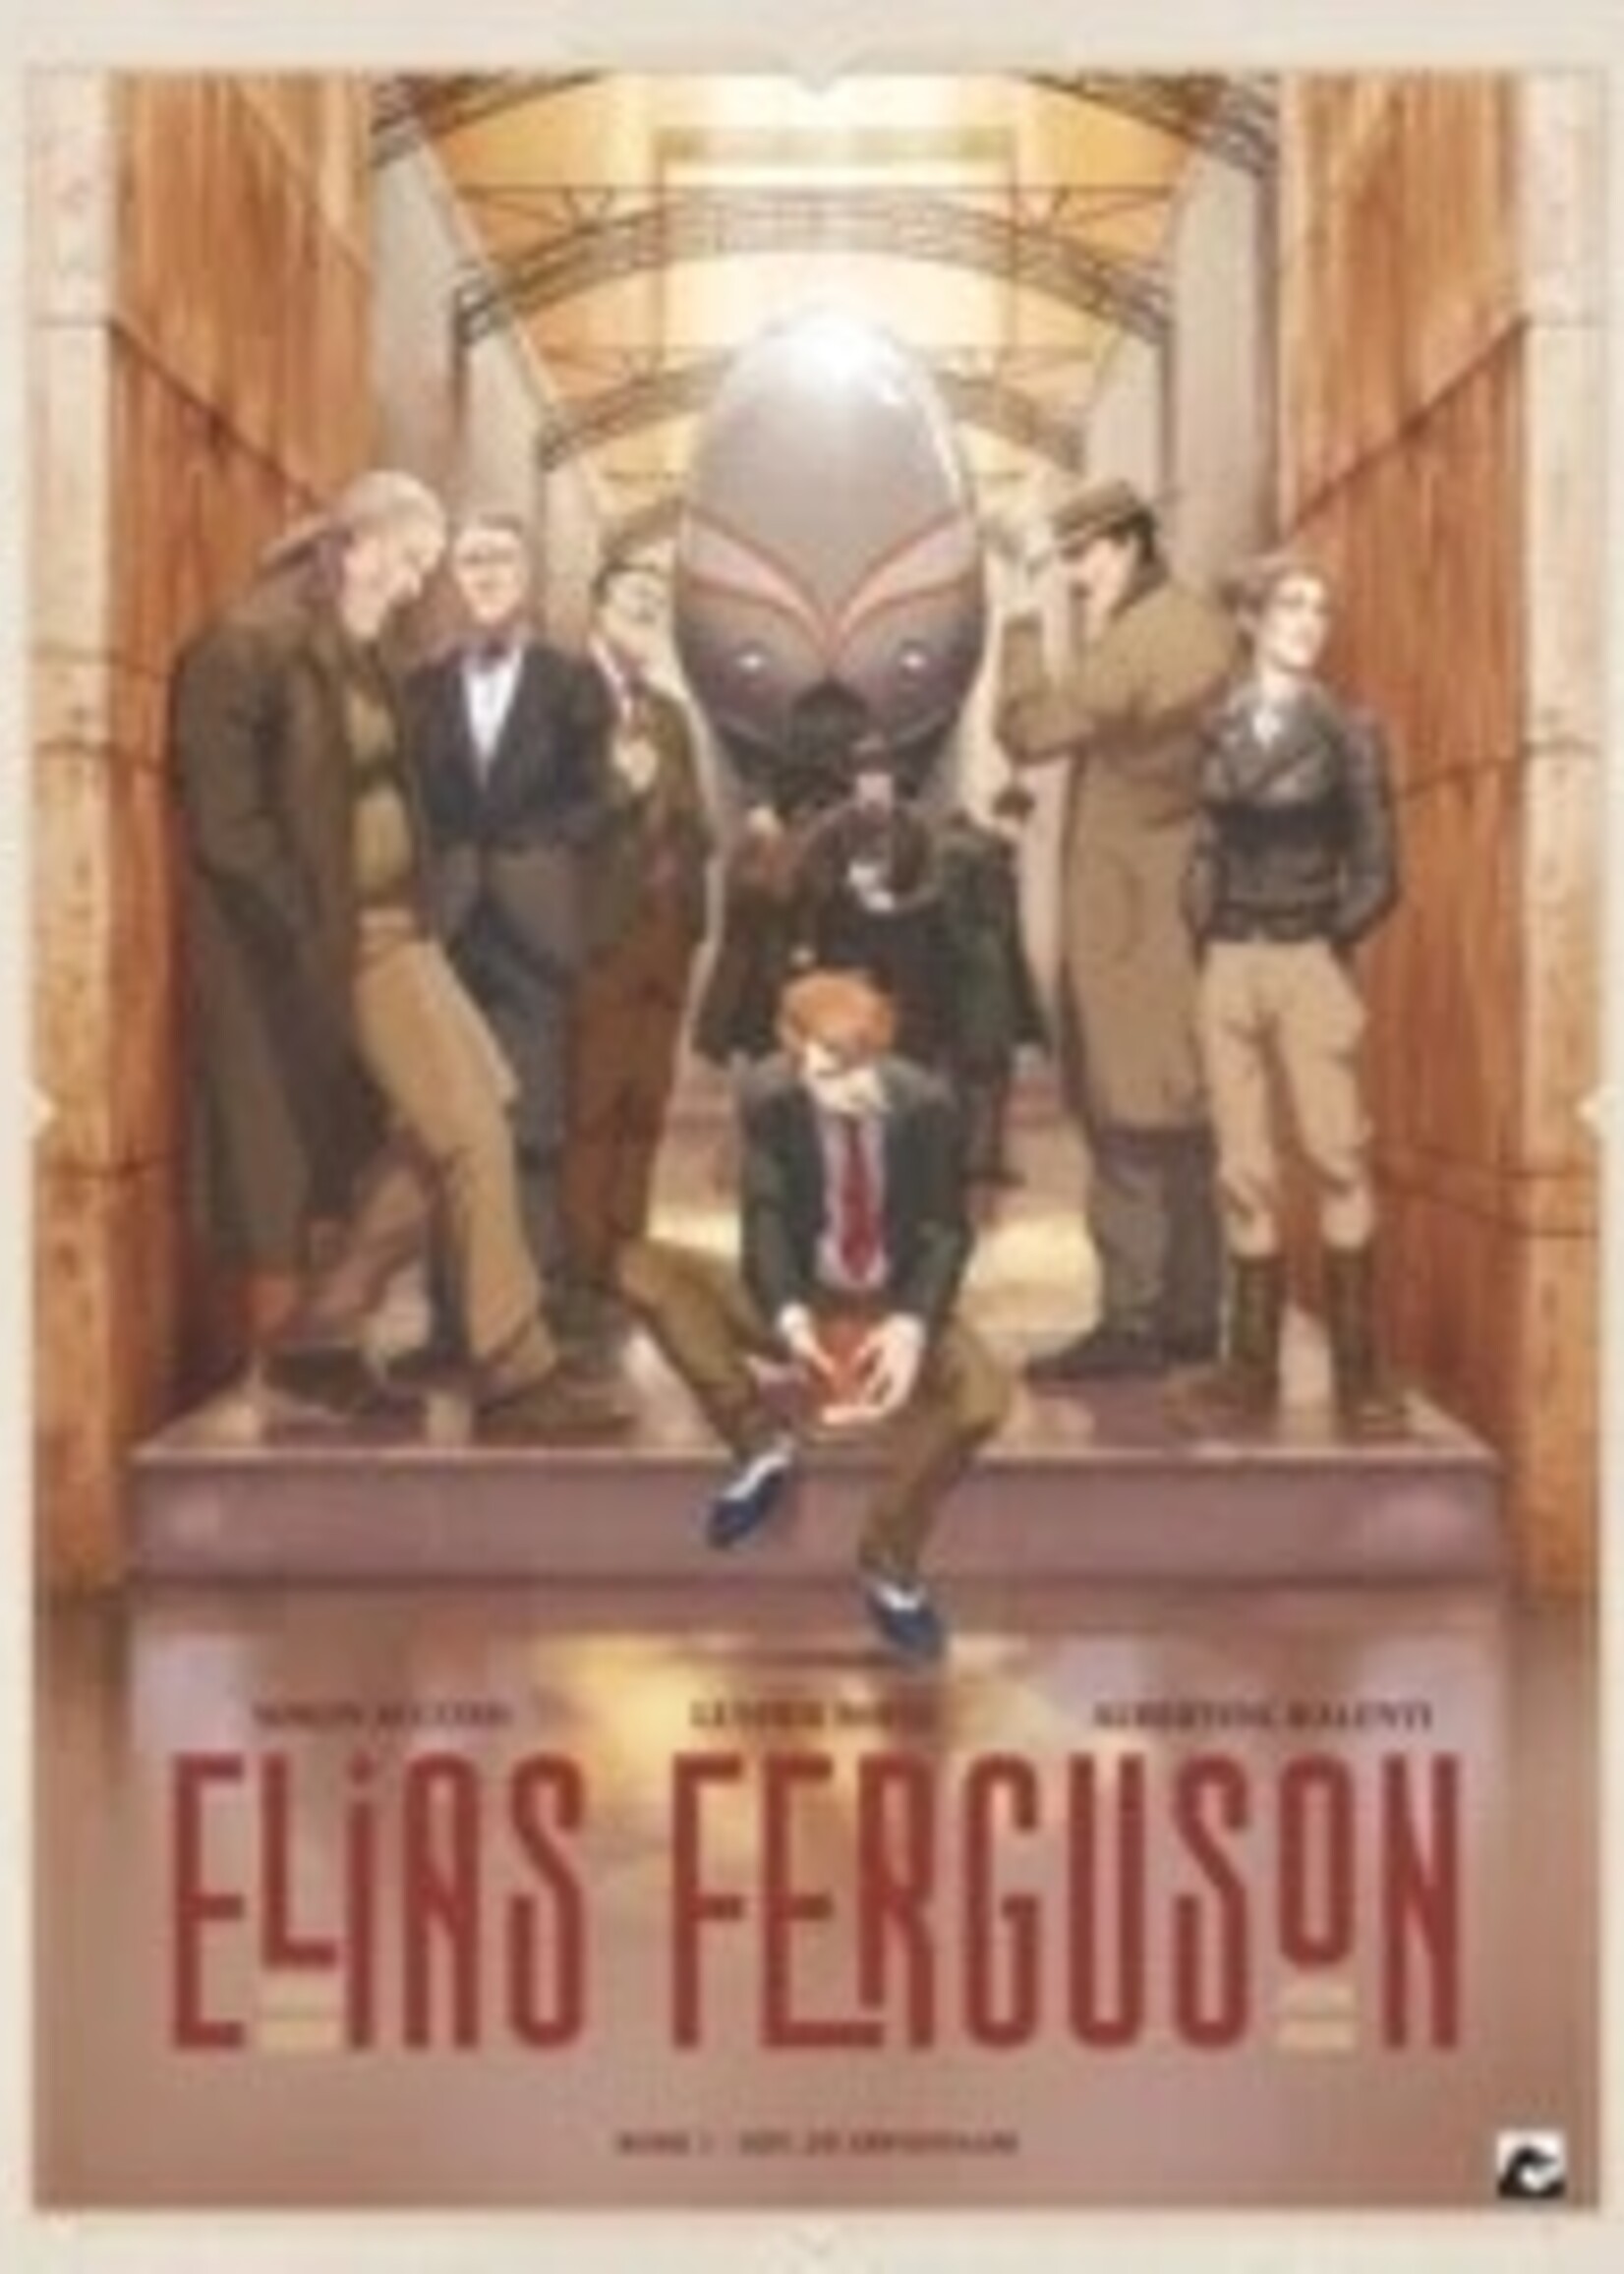 Dark Dragon Elias Ferguson